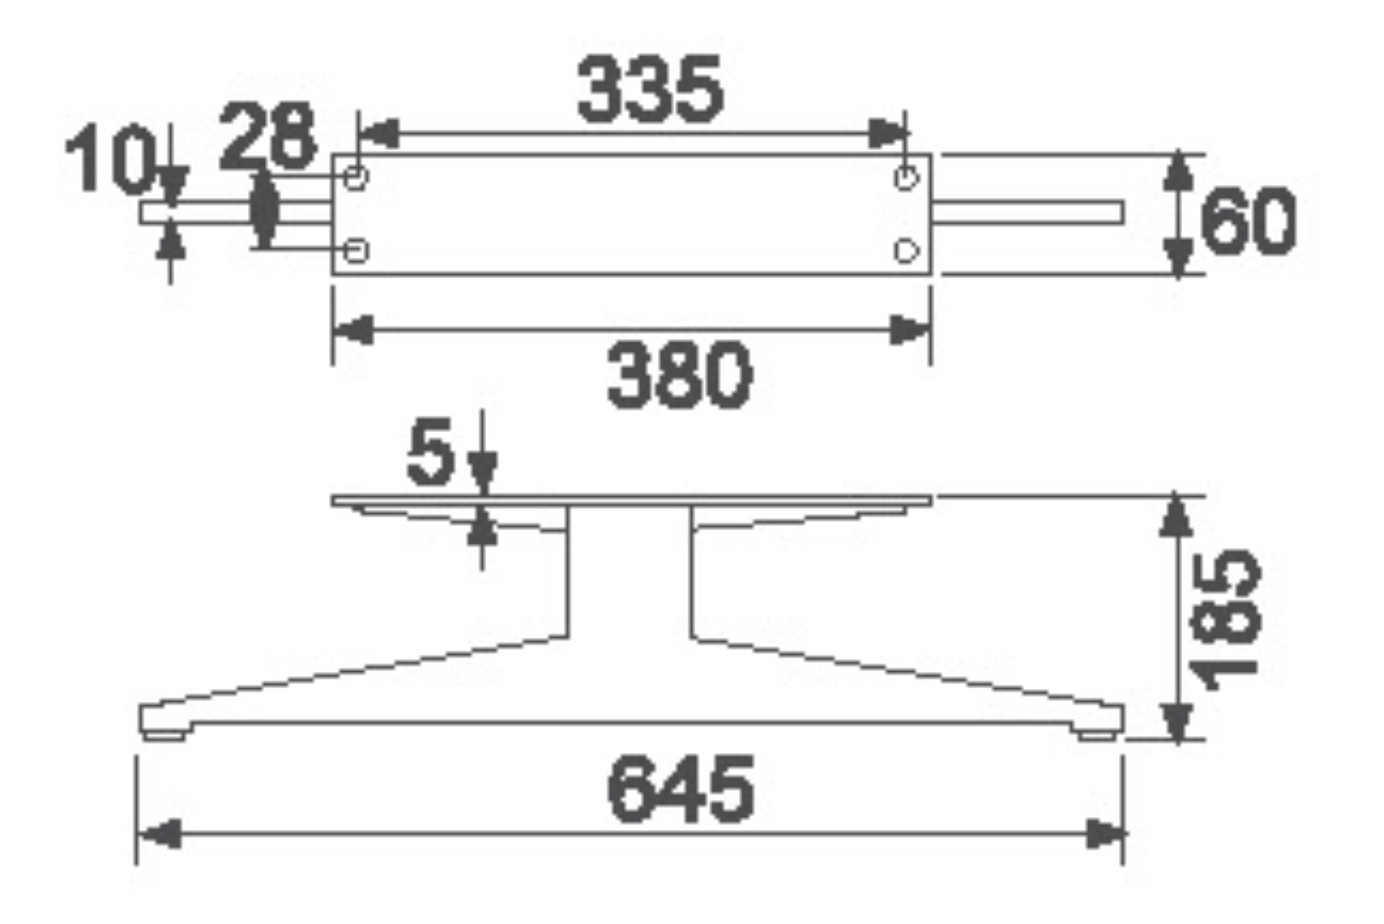 სამოქალაქო ავეჯის აქსესუარები ლაზერული საჭრელი ლითონის ფეხები Biaode SHB3015 დივნის ავტომატური მექანიკური შედუღება დივანის ლითონის ფეხები/SHB3015 (H: 7.2 ინჩი) გამორჩეული სურათი